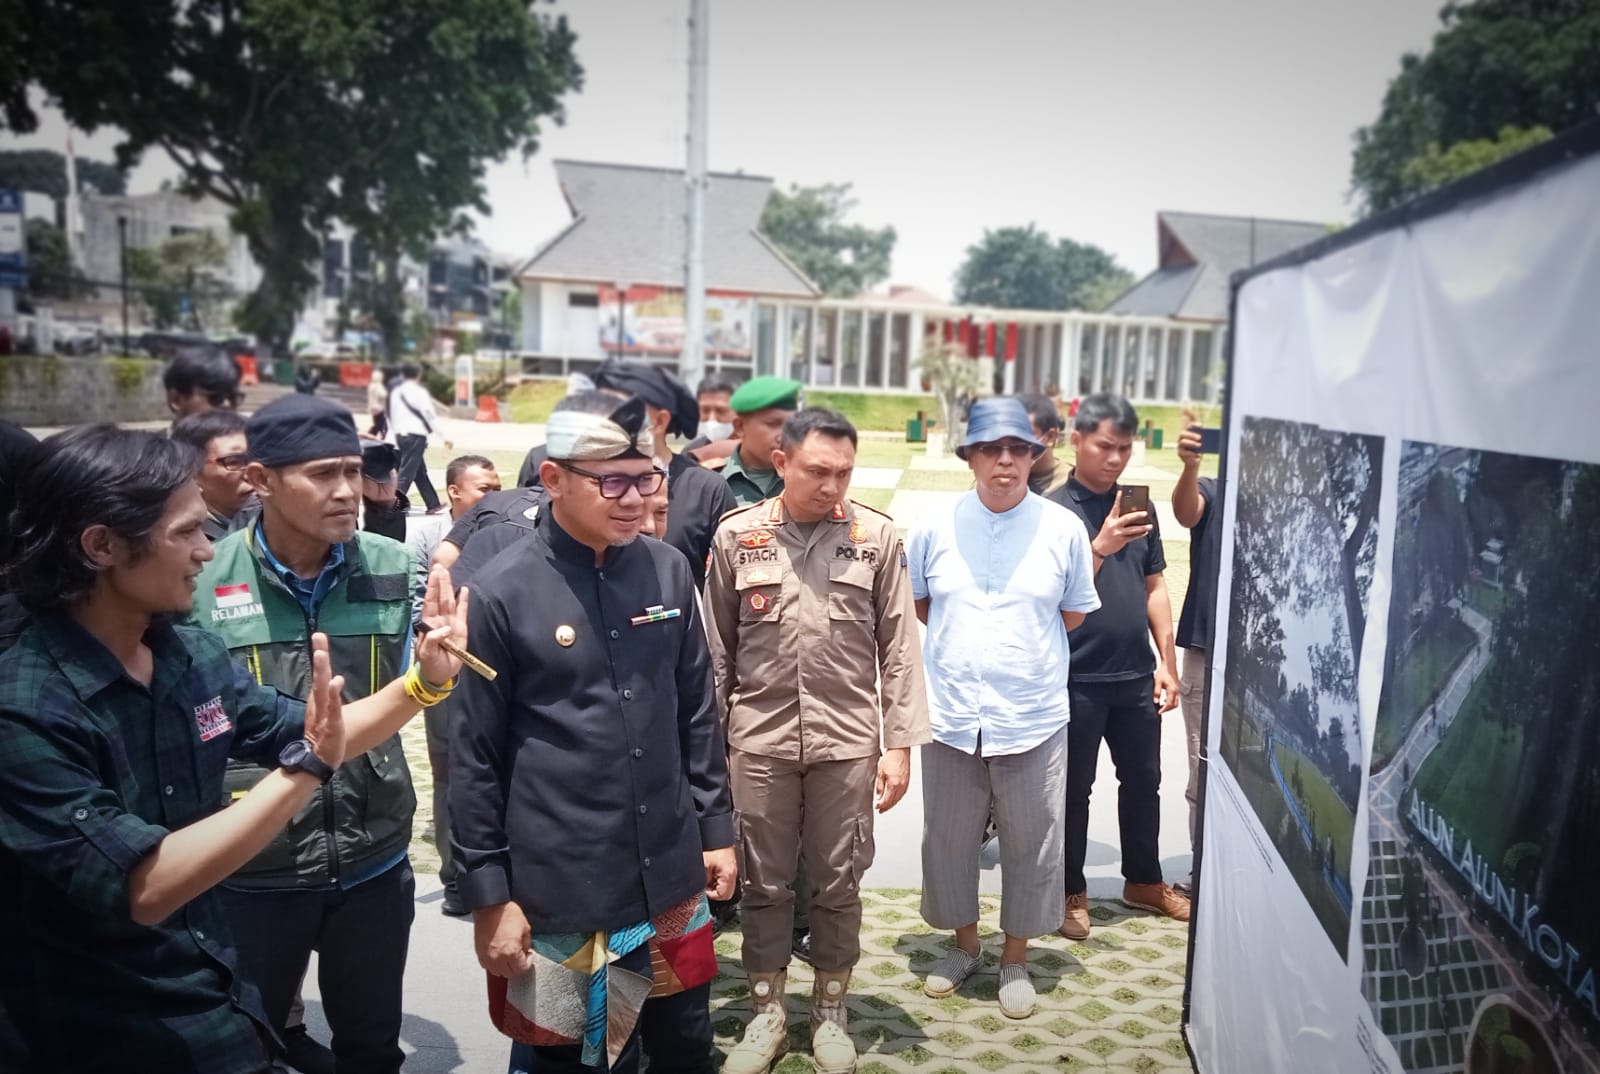 Ketua PFI Kota Bogor Hendi Novian saat menjelaskan sejumlah hasil karya foto dari anggotanya kepada Wali Kota Bogor Bima Arya di Alun-alun Kota Bogor, Kamis (15/9). (Yudha Prananda / Jabar Ekspres)